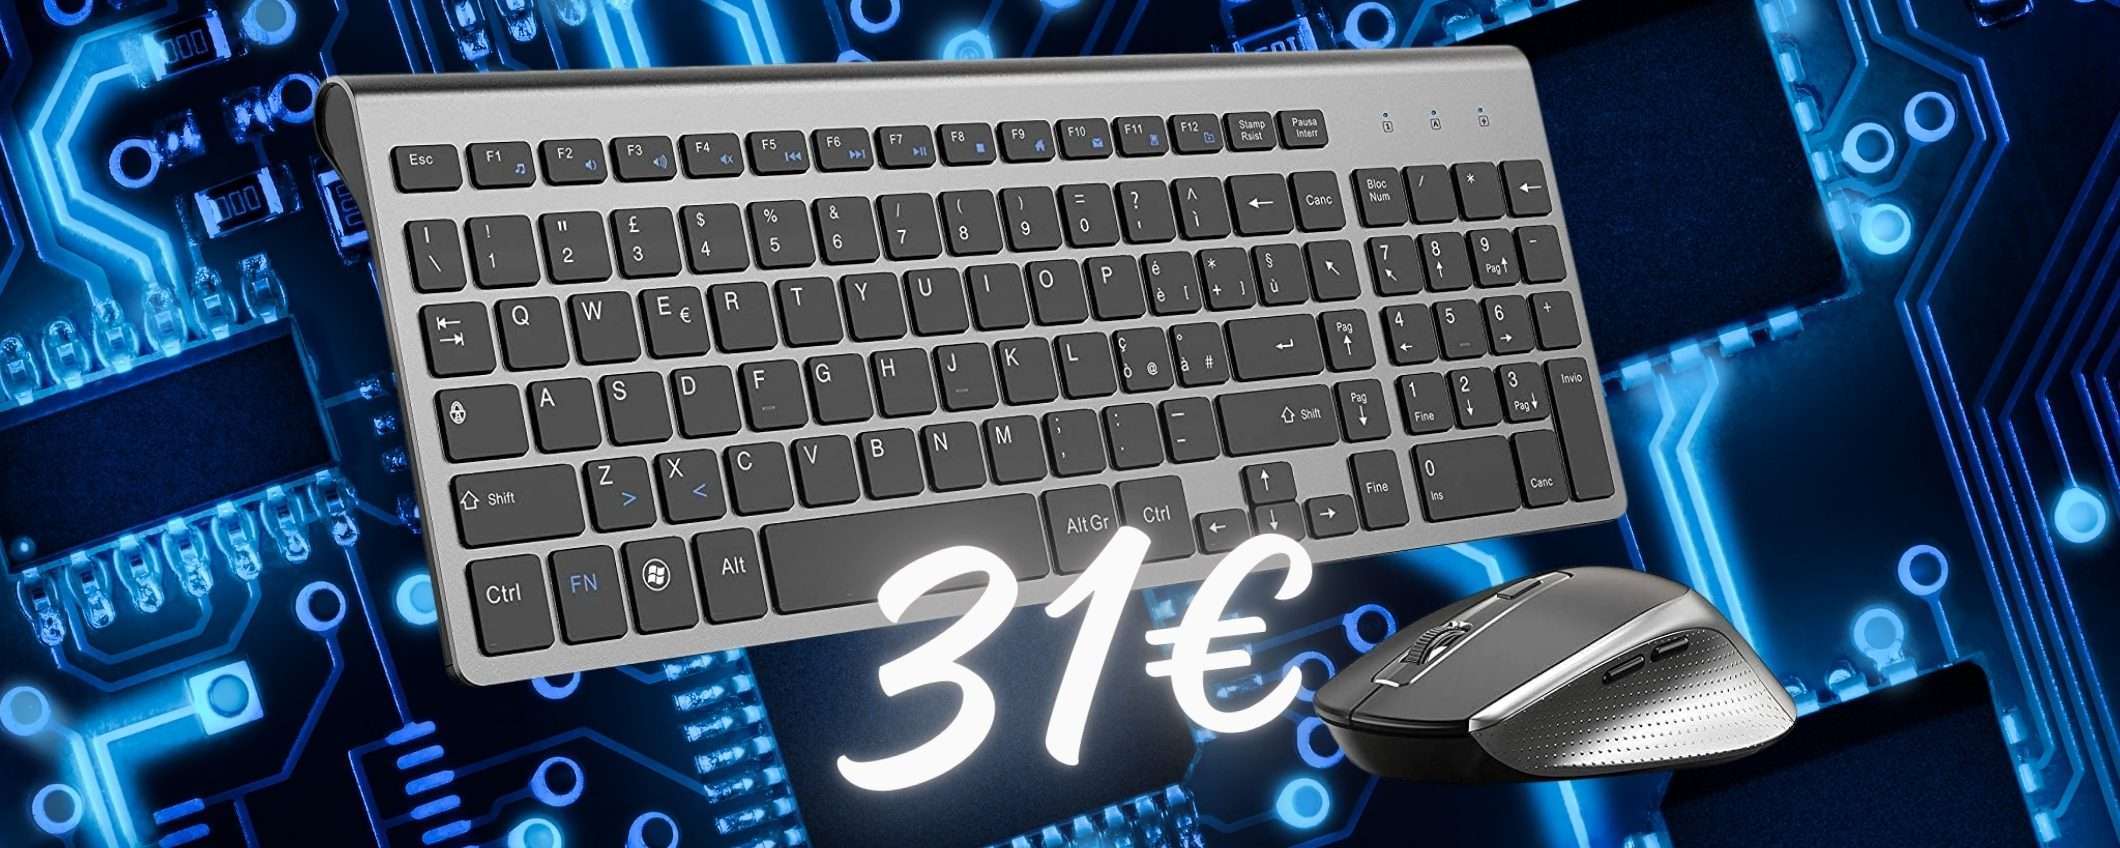 Tastiera e mouse wireless a PREZZO ASSURDO, solo 31€ (ancora per poco)